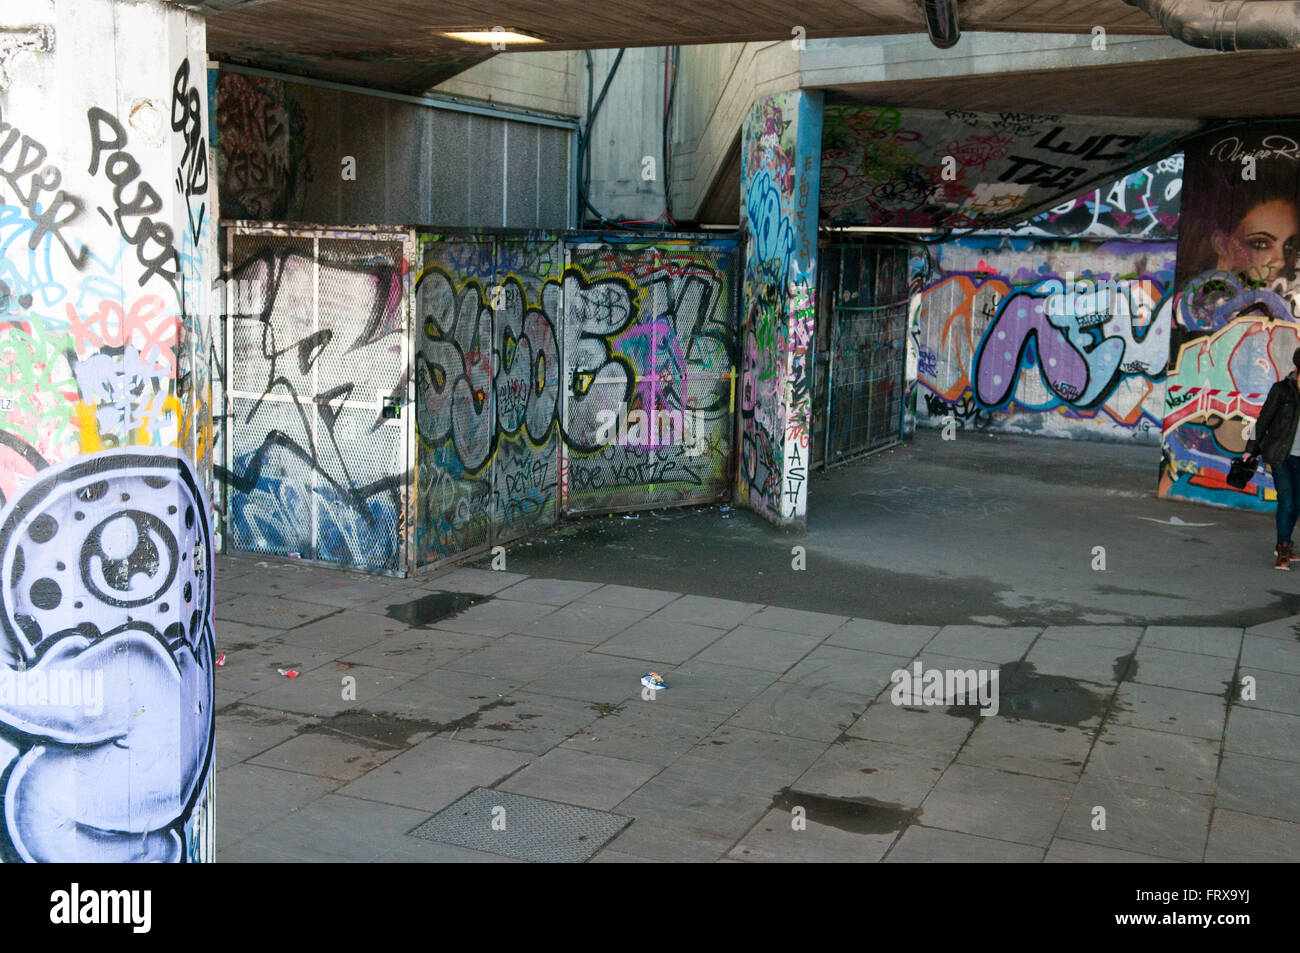 Escena urbana en una ciudad con pintadas en las paredes. Foto de stock